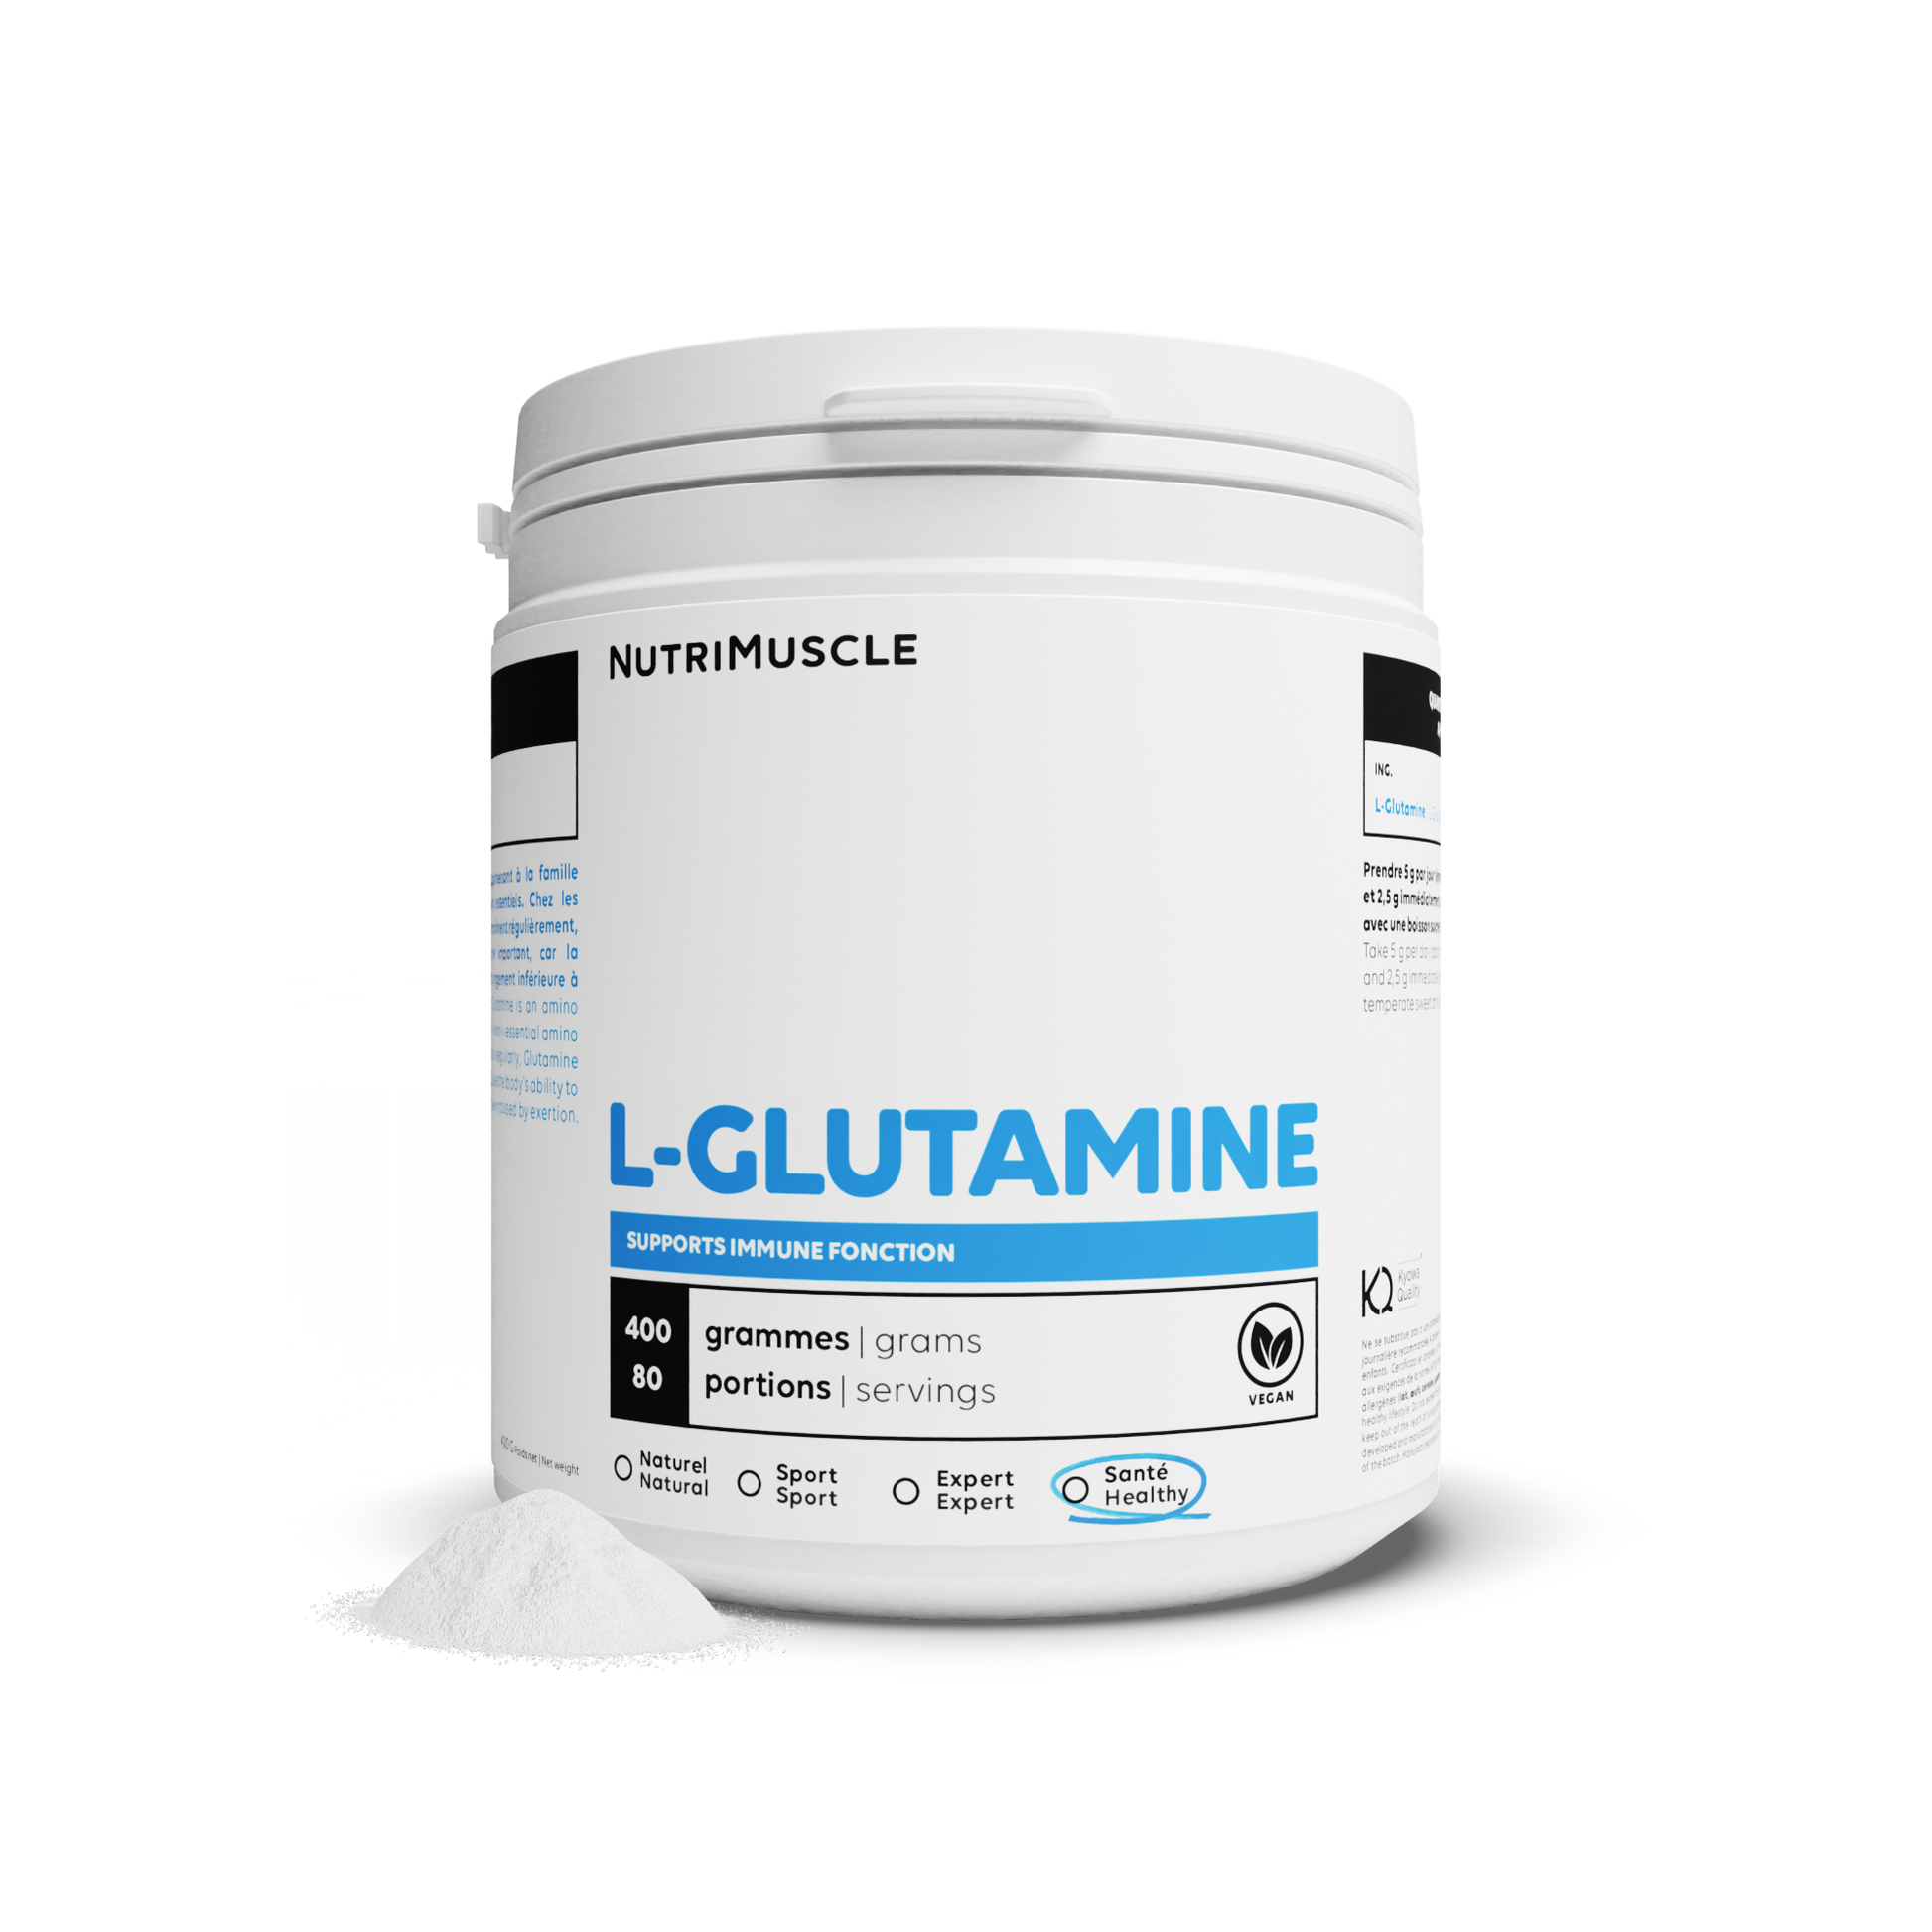 Glutamine (L-glutamine) powder